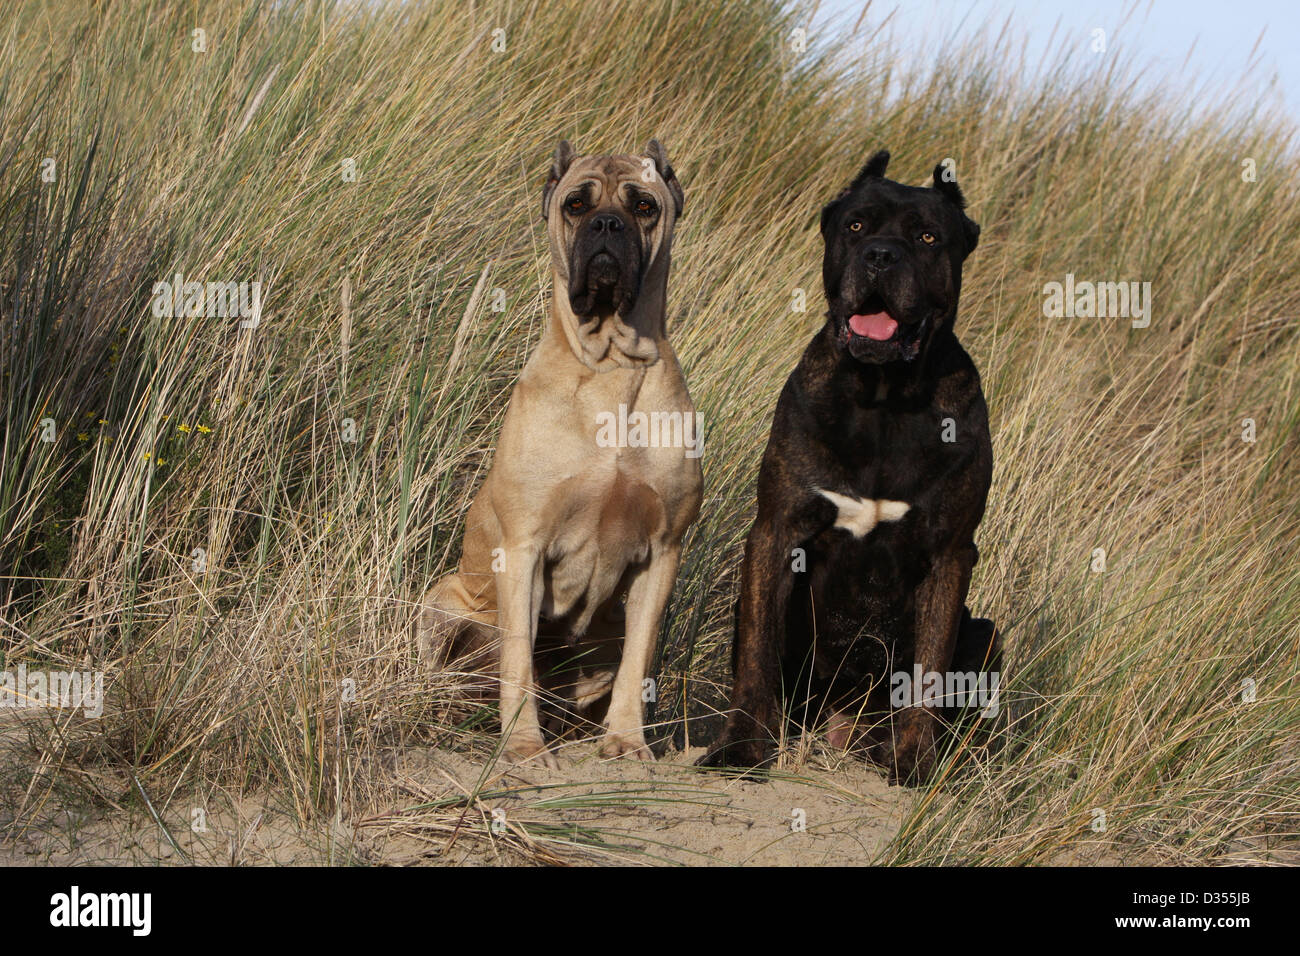 Hund Cane Corso / italienischen Molosser zwei Erwachsene verschiedene  Farben auf dem Sand sitzen Stockfotografie - Alamy